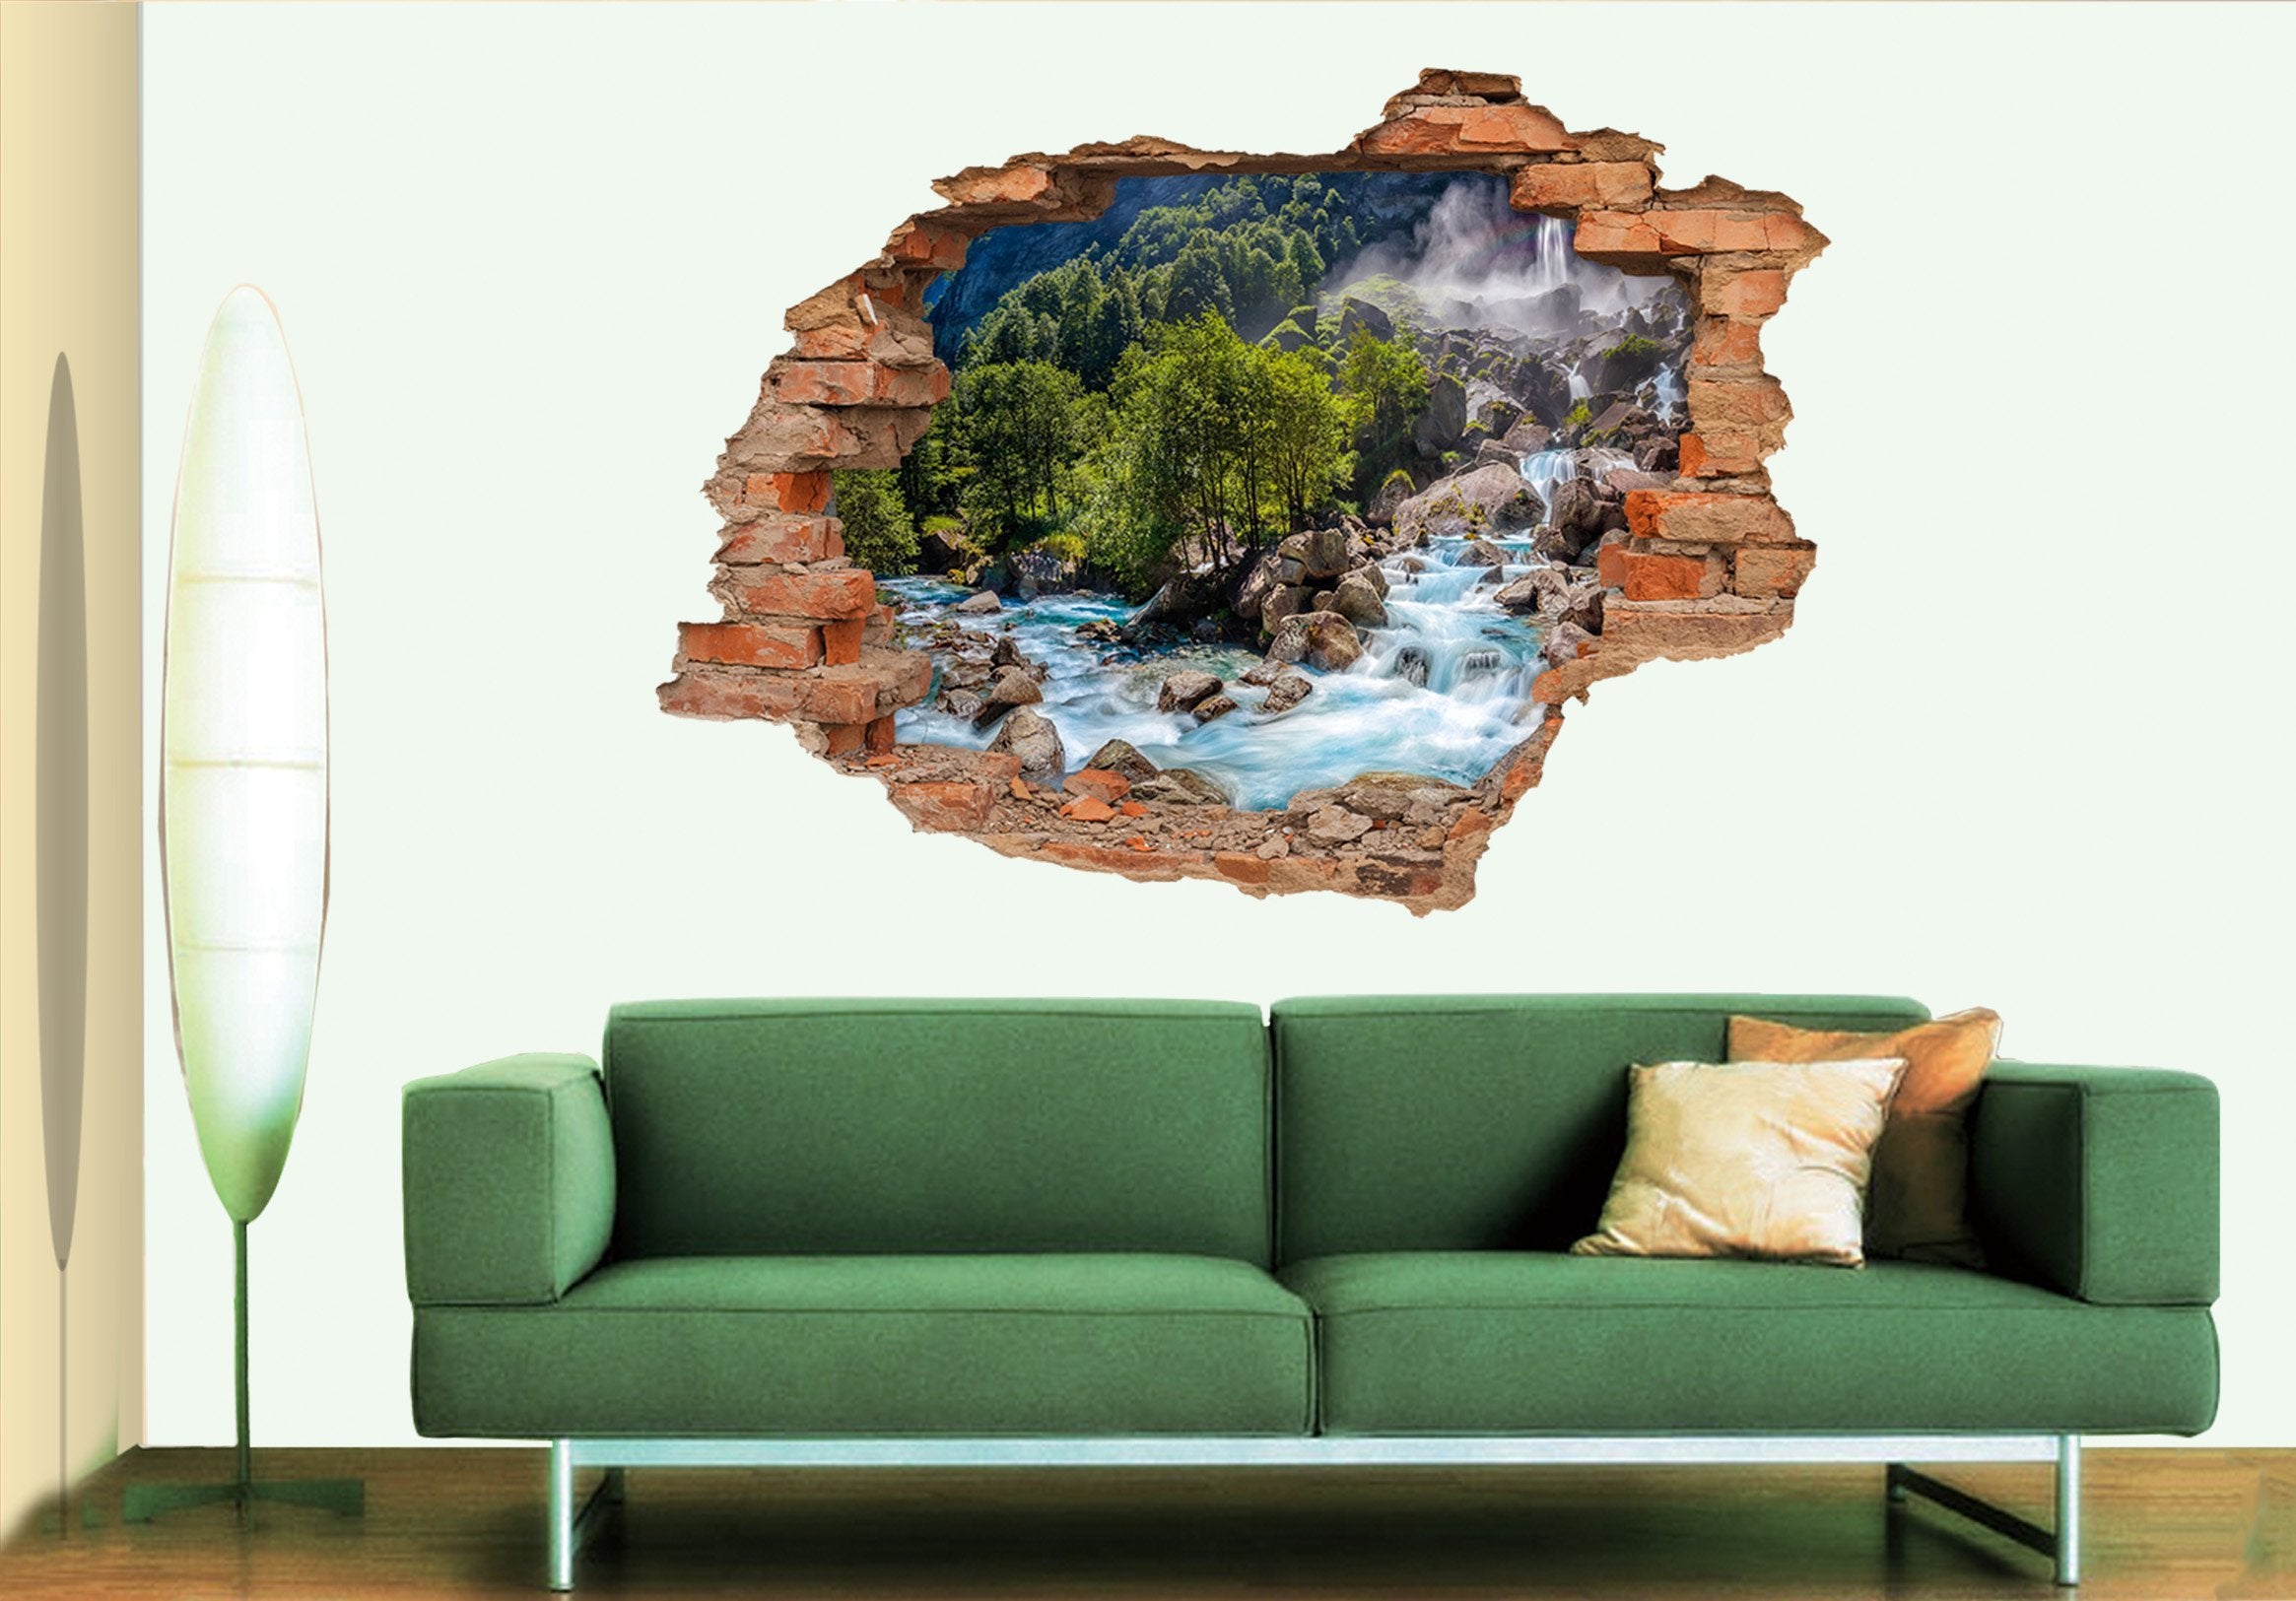 3D Mountain River 200 Broken Wall Murals Wallpaper AJ Wallpaper 